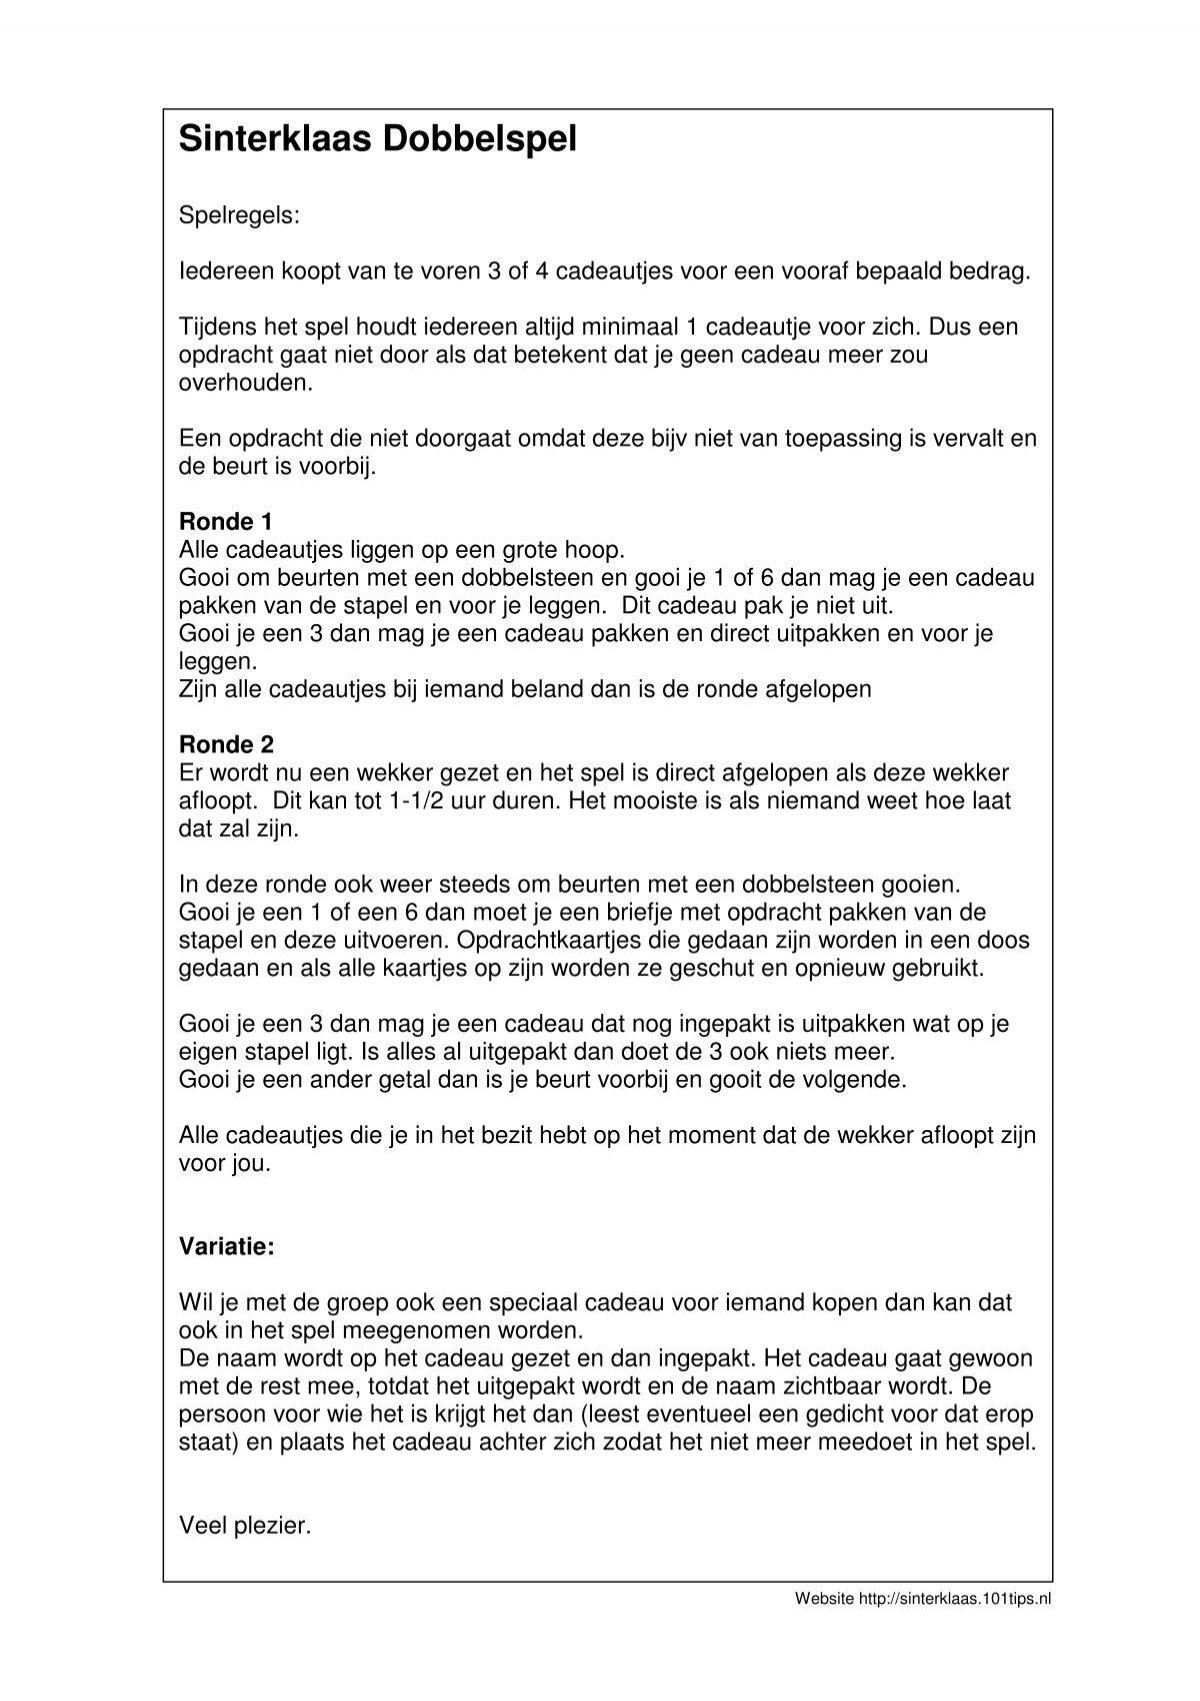 Raap bladeren op vasteland Ontwaken SinterklaasDobbelsteenSpel.pdf downloaden - Sinterklaas Tips